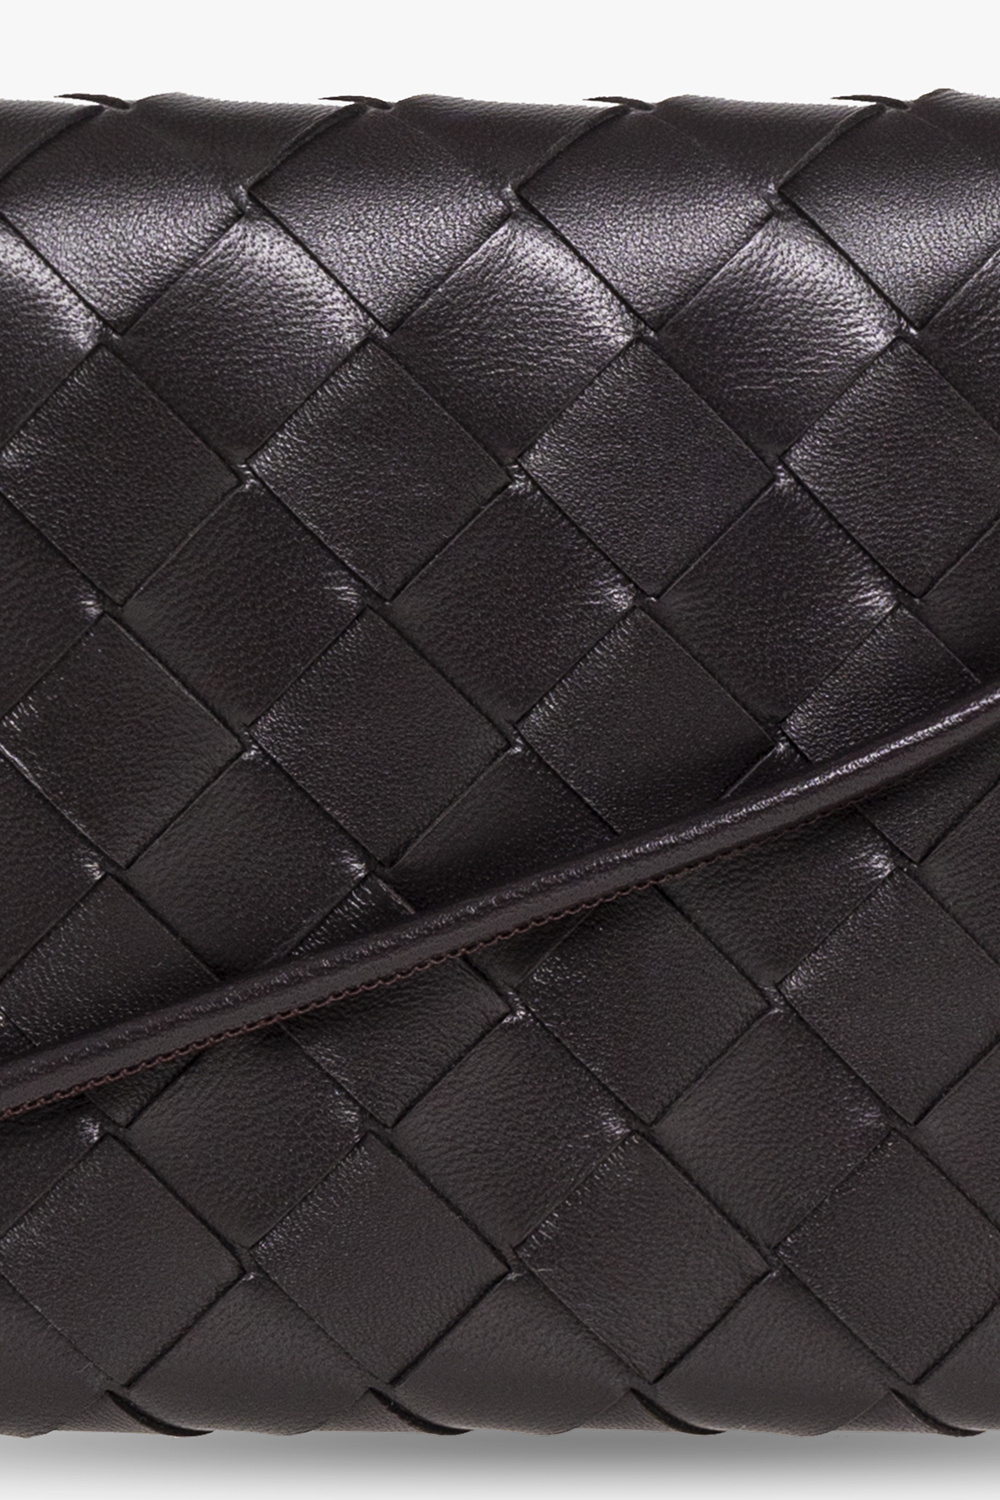 Bottega Veneta Intrecciato Leather Wallet on a Strap